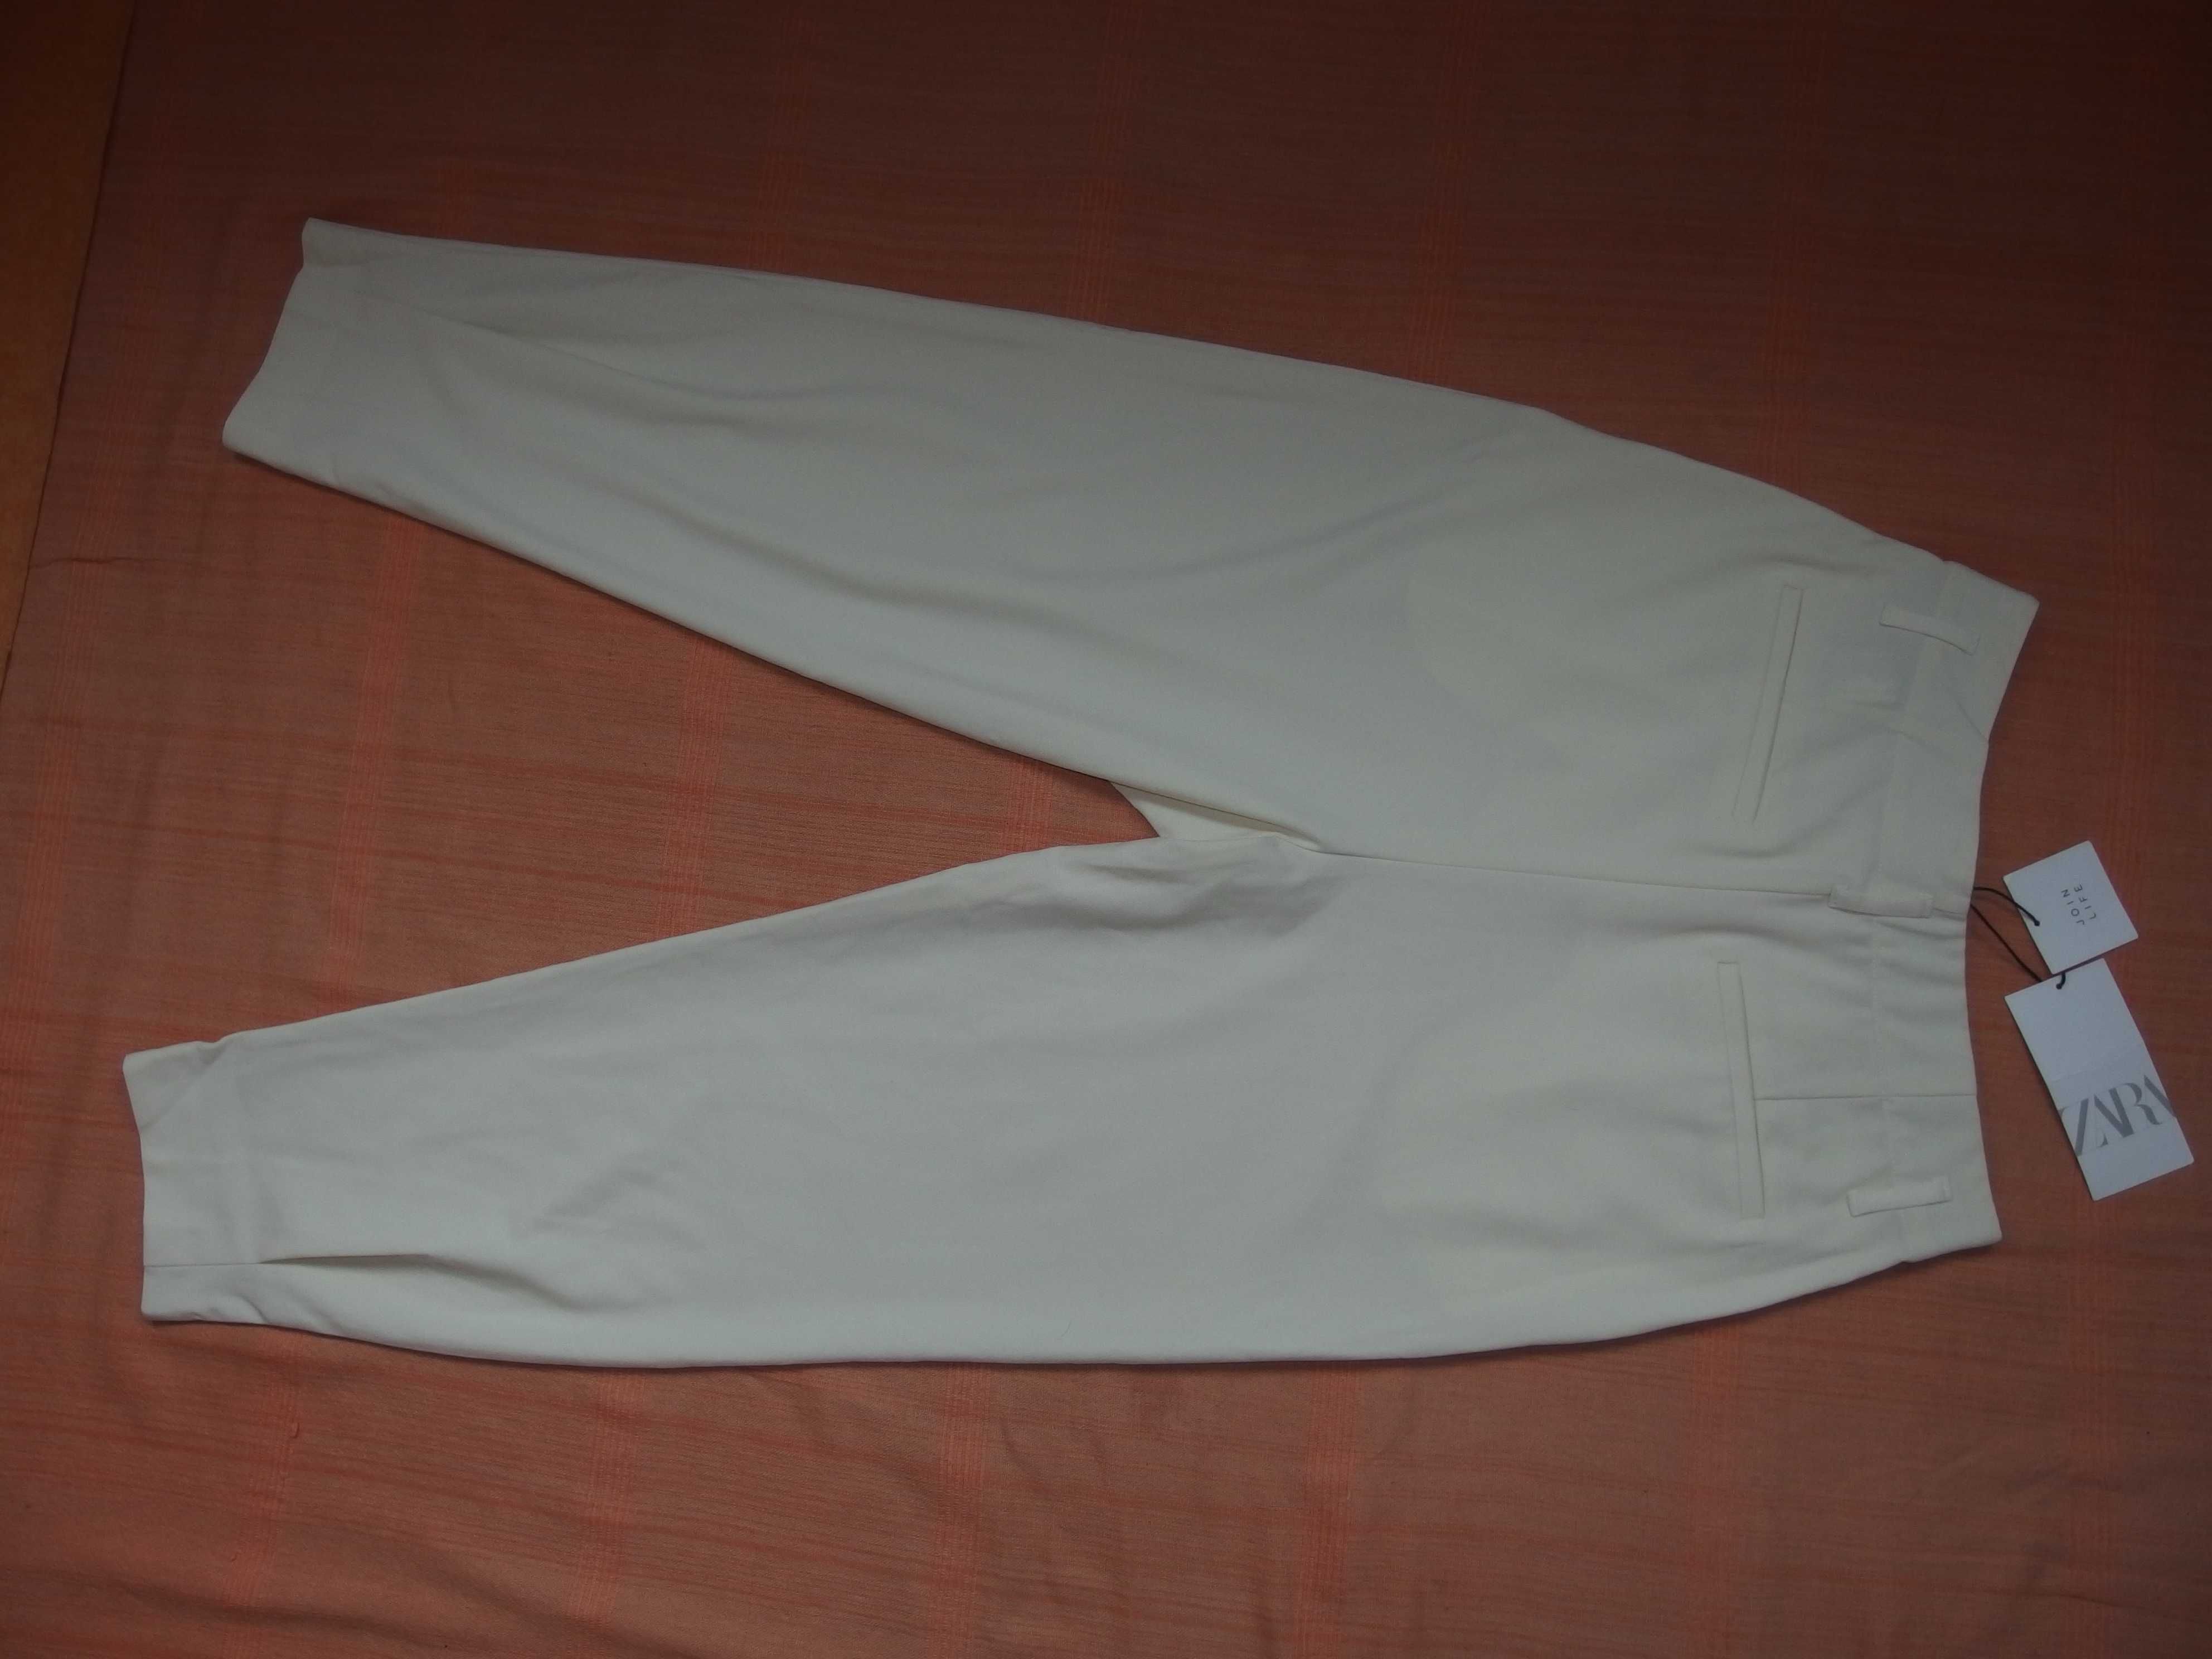 Стильные брюки Zara eur-S размер наш~ 46